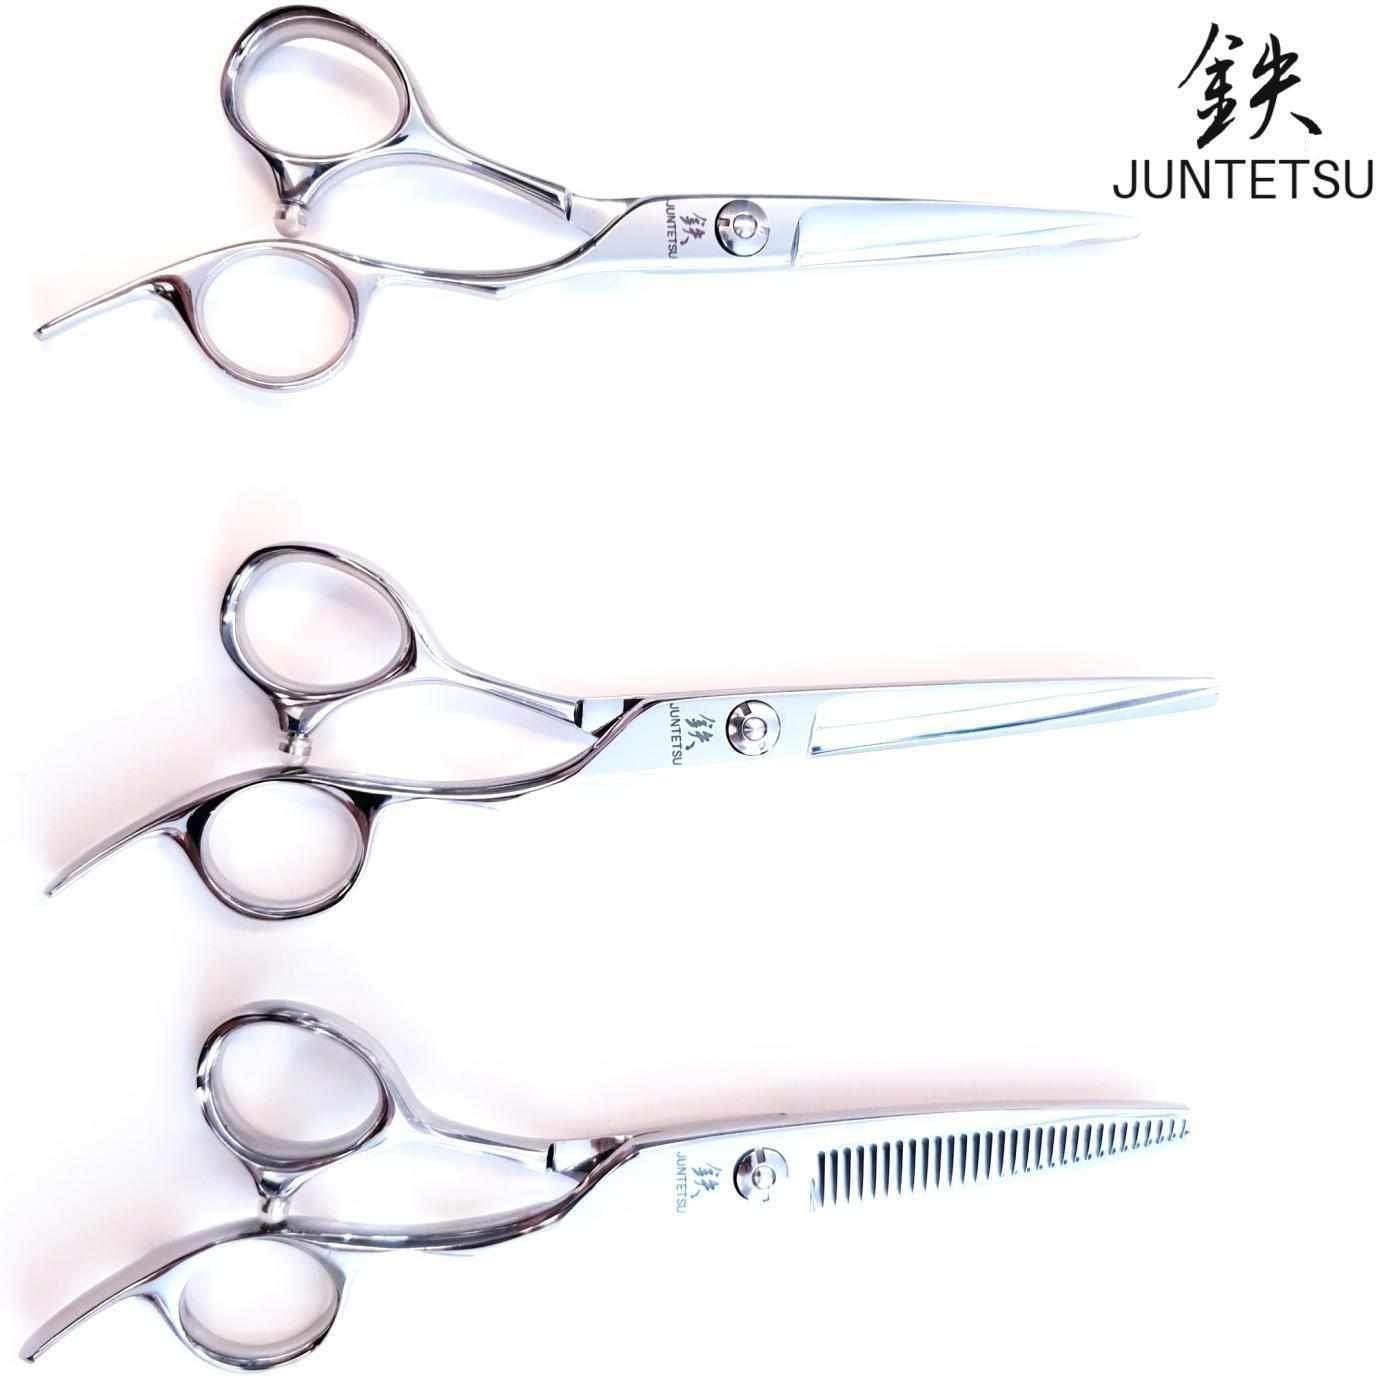 https://www.jpscissors.com/cdn/shop/products/juntetsu-offset-cutting-thinning-master-scissor-set-198972_1600x.jpg?v=1663030389